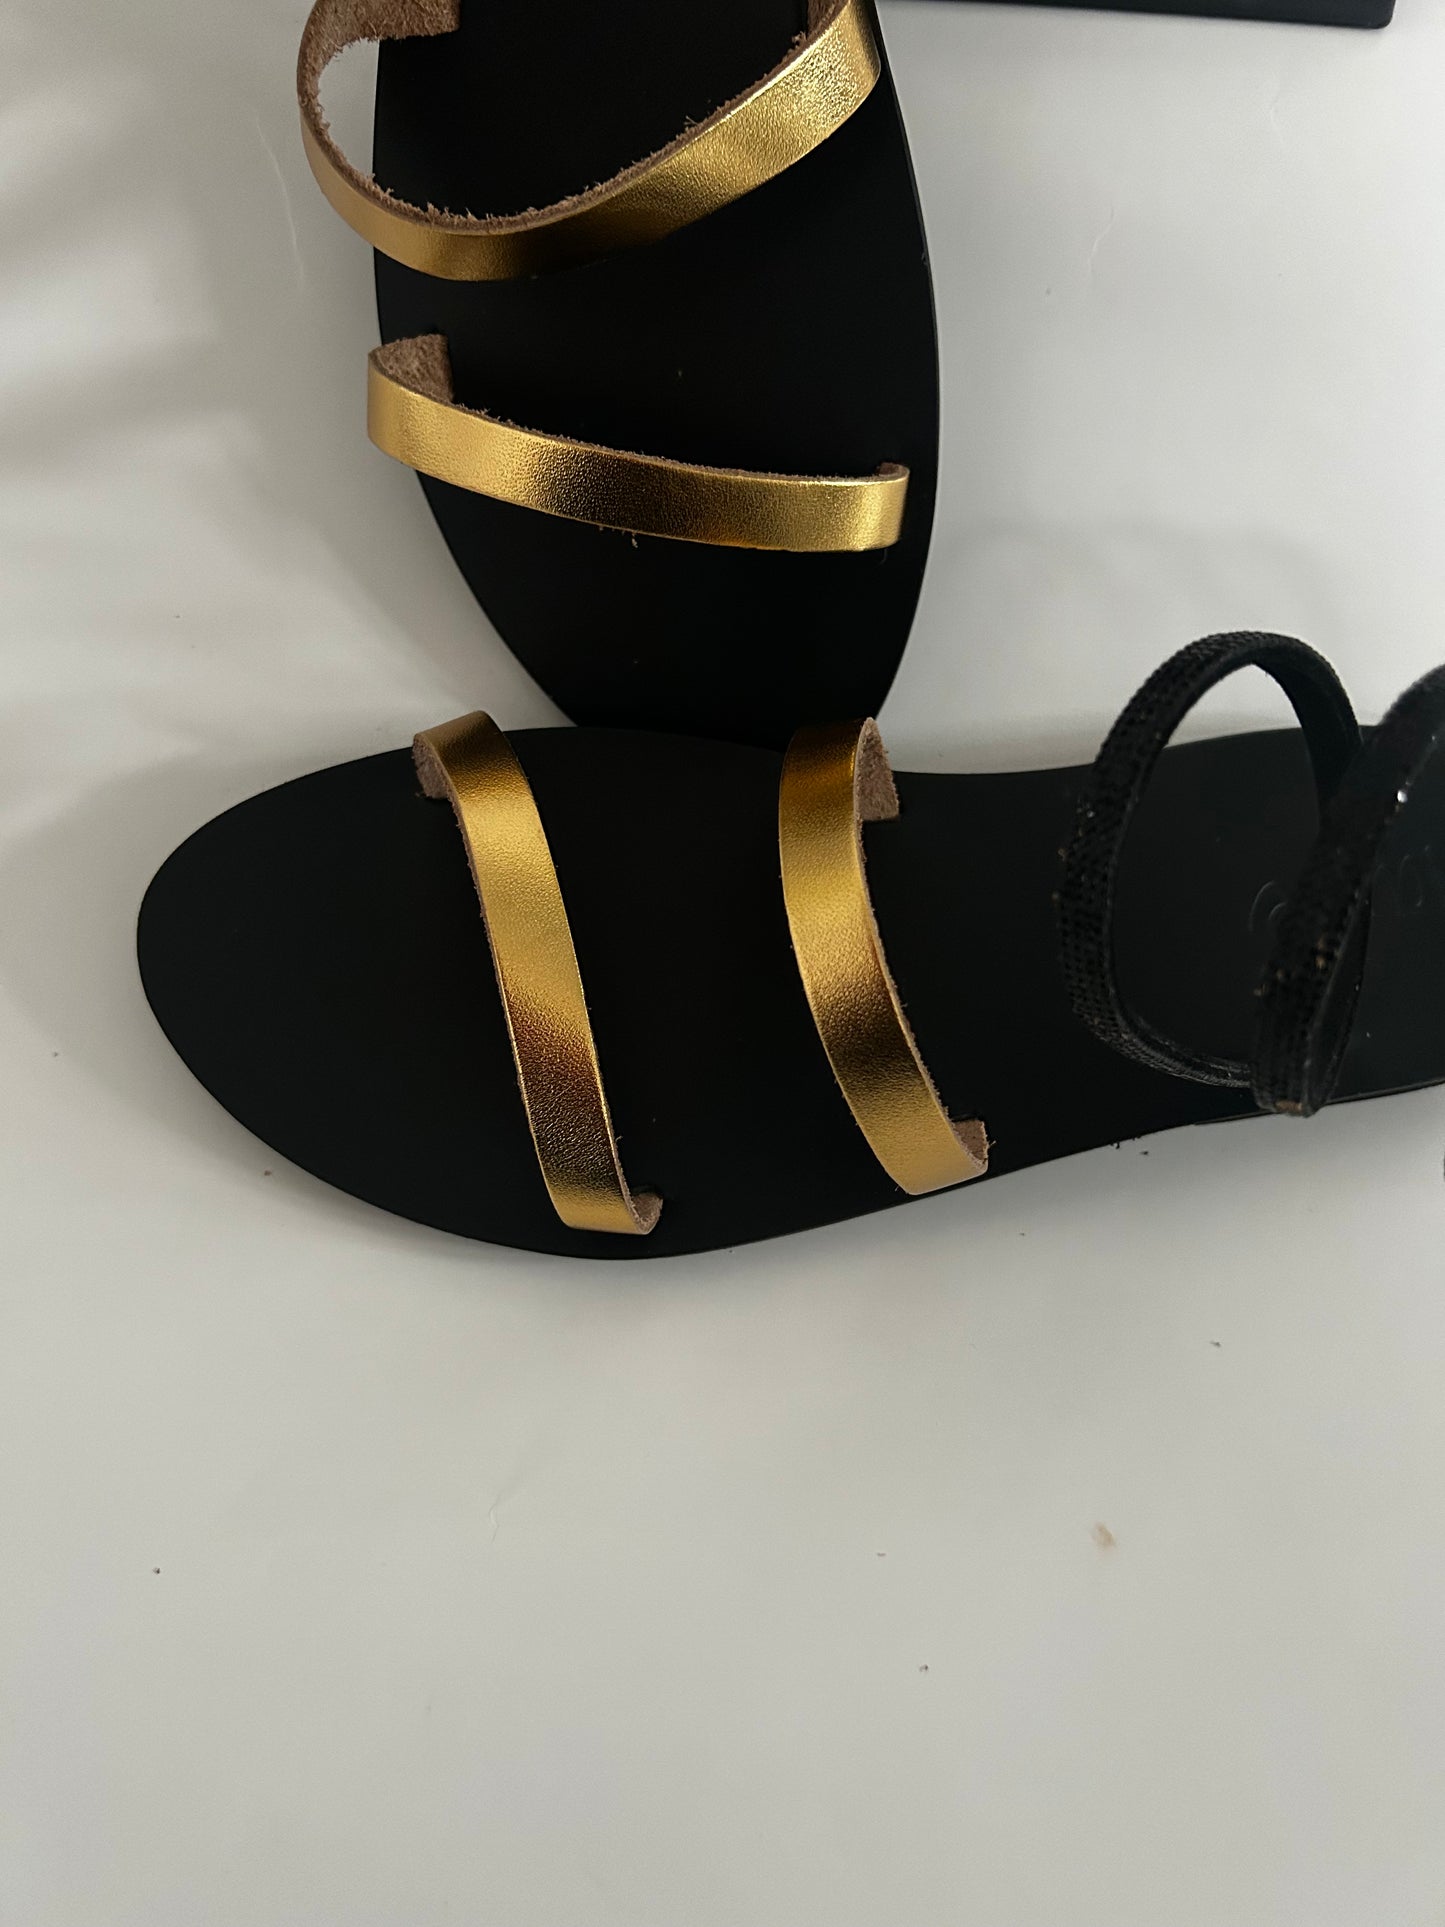 Unique Ankle Greek Sandals - LS 100 Percent You